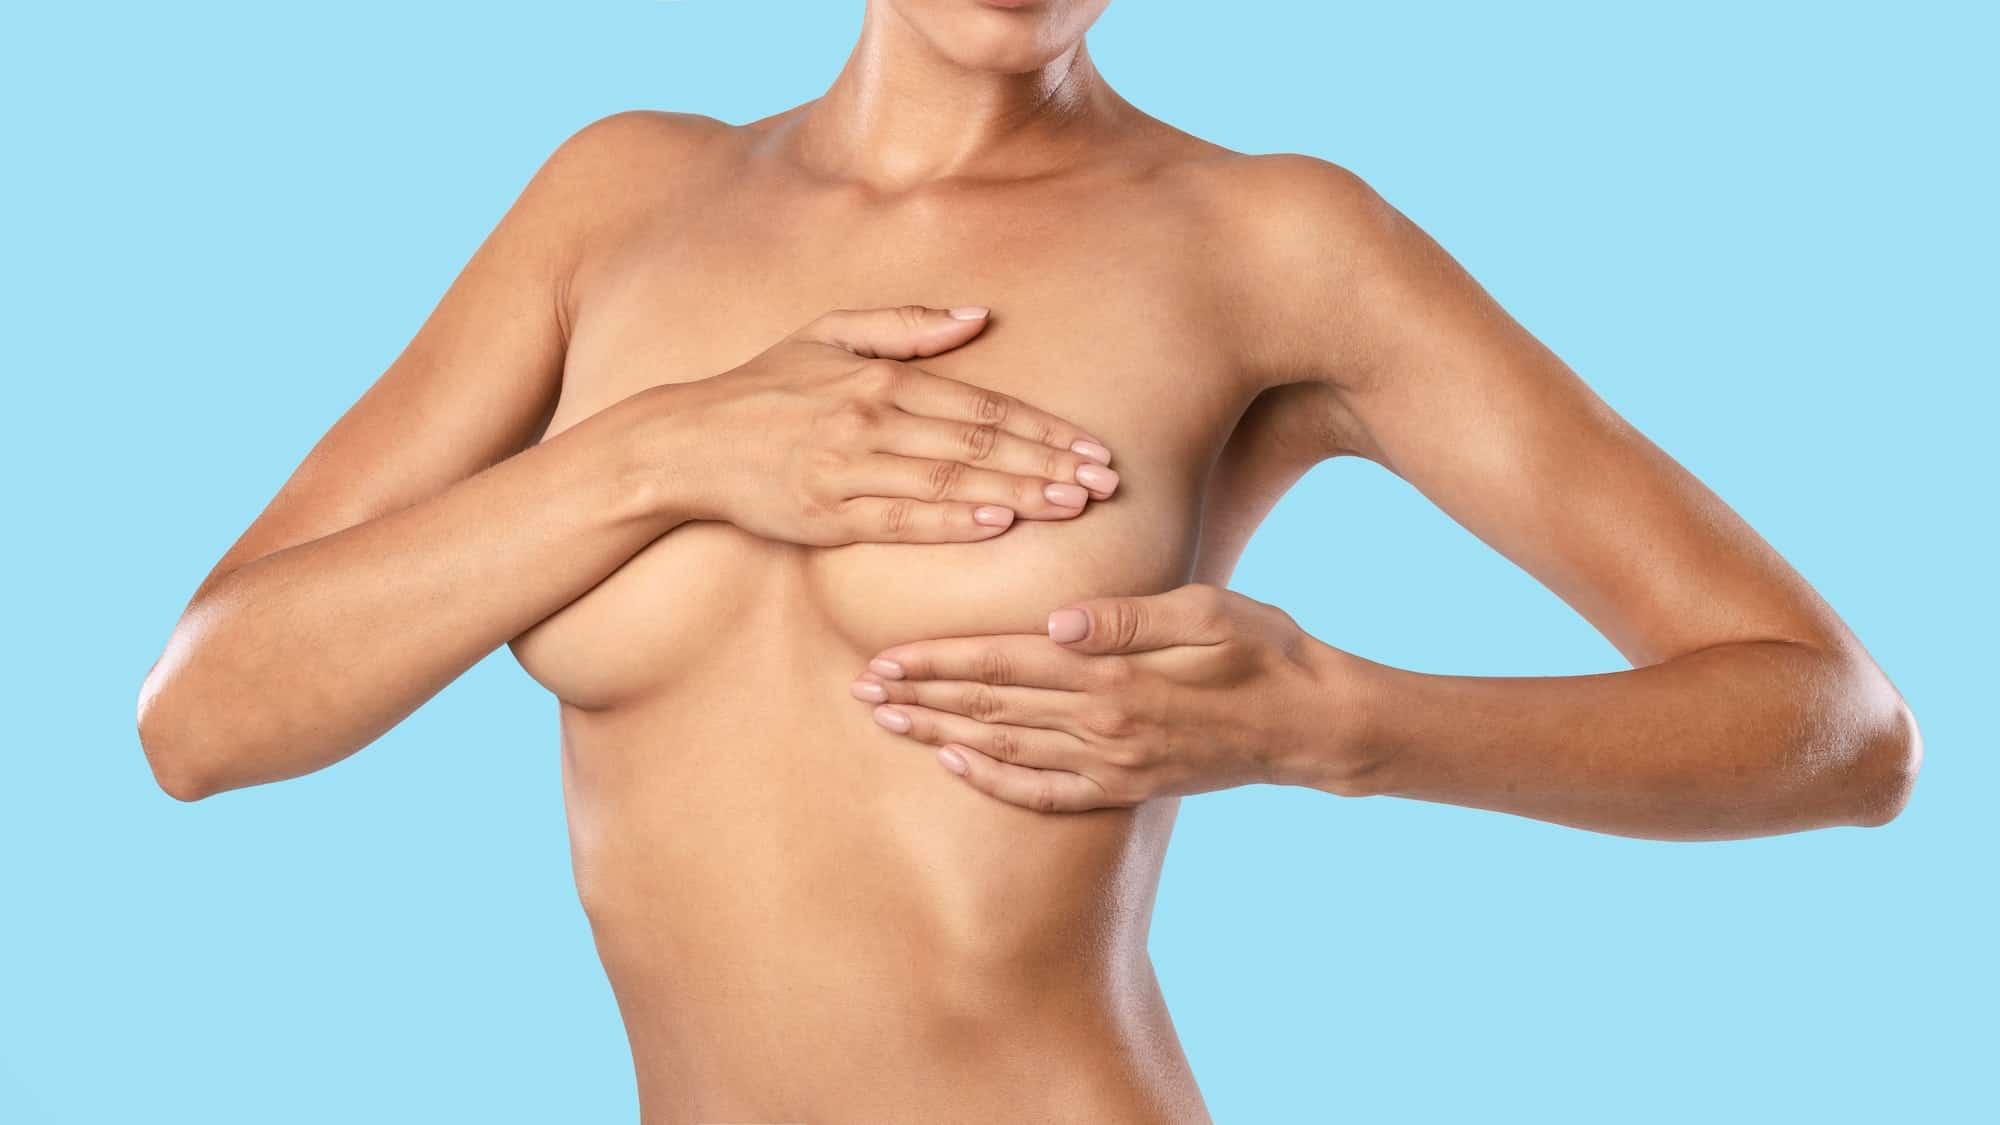 Brustmassage für schöne Brüste